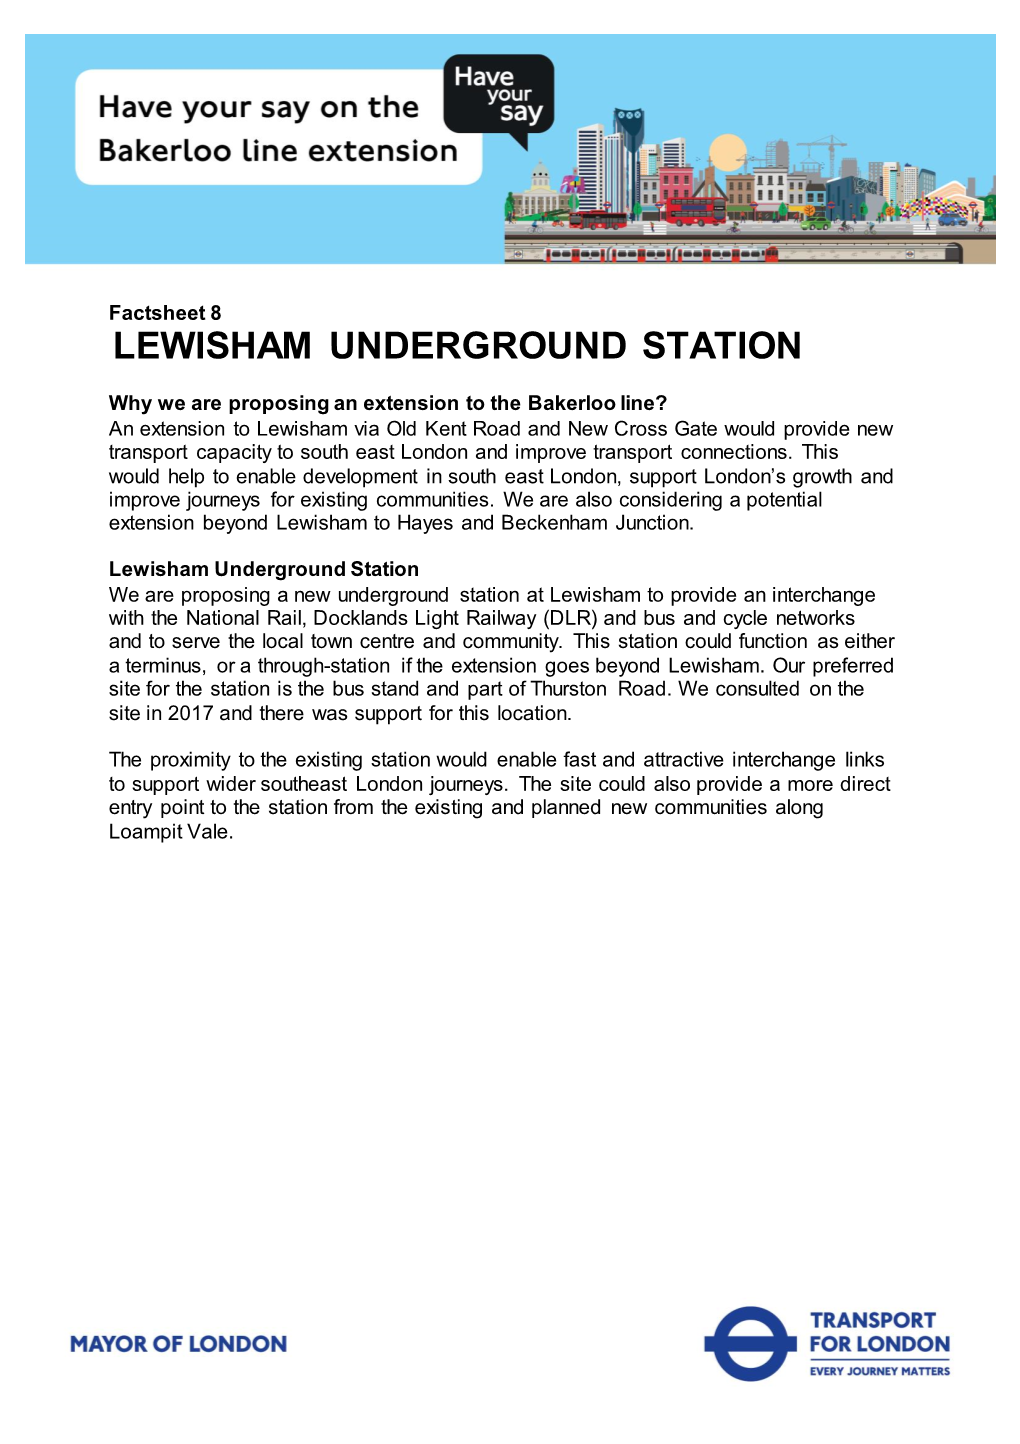 Factsheet 8. Lewisham Underground Station